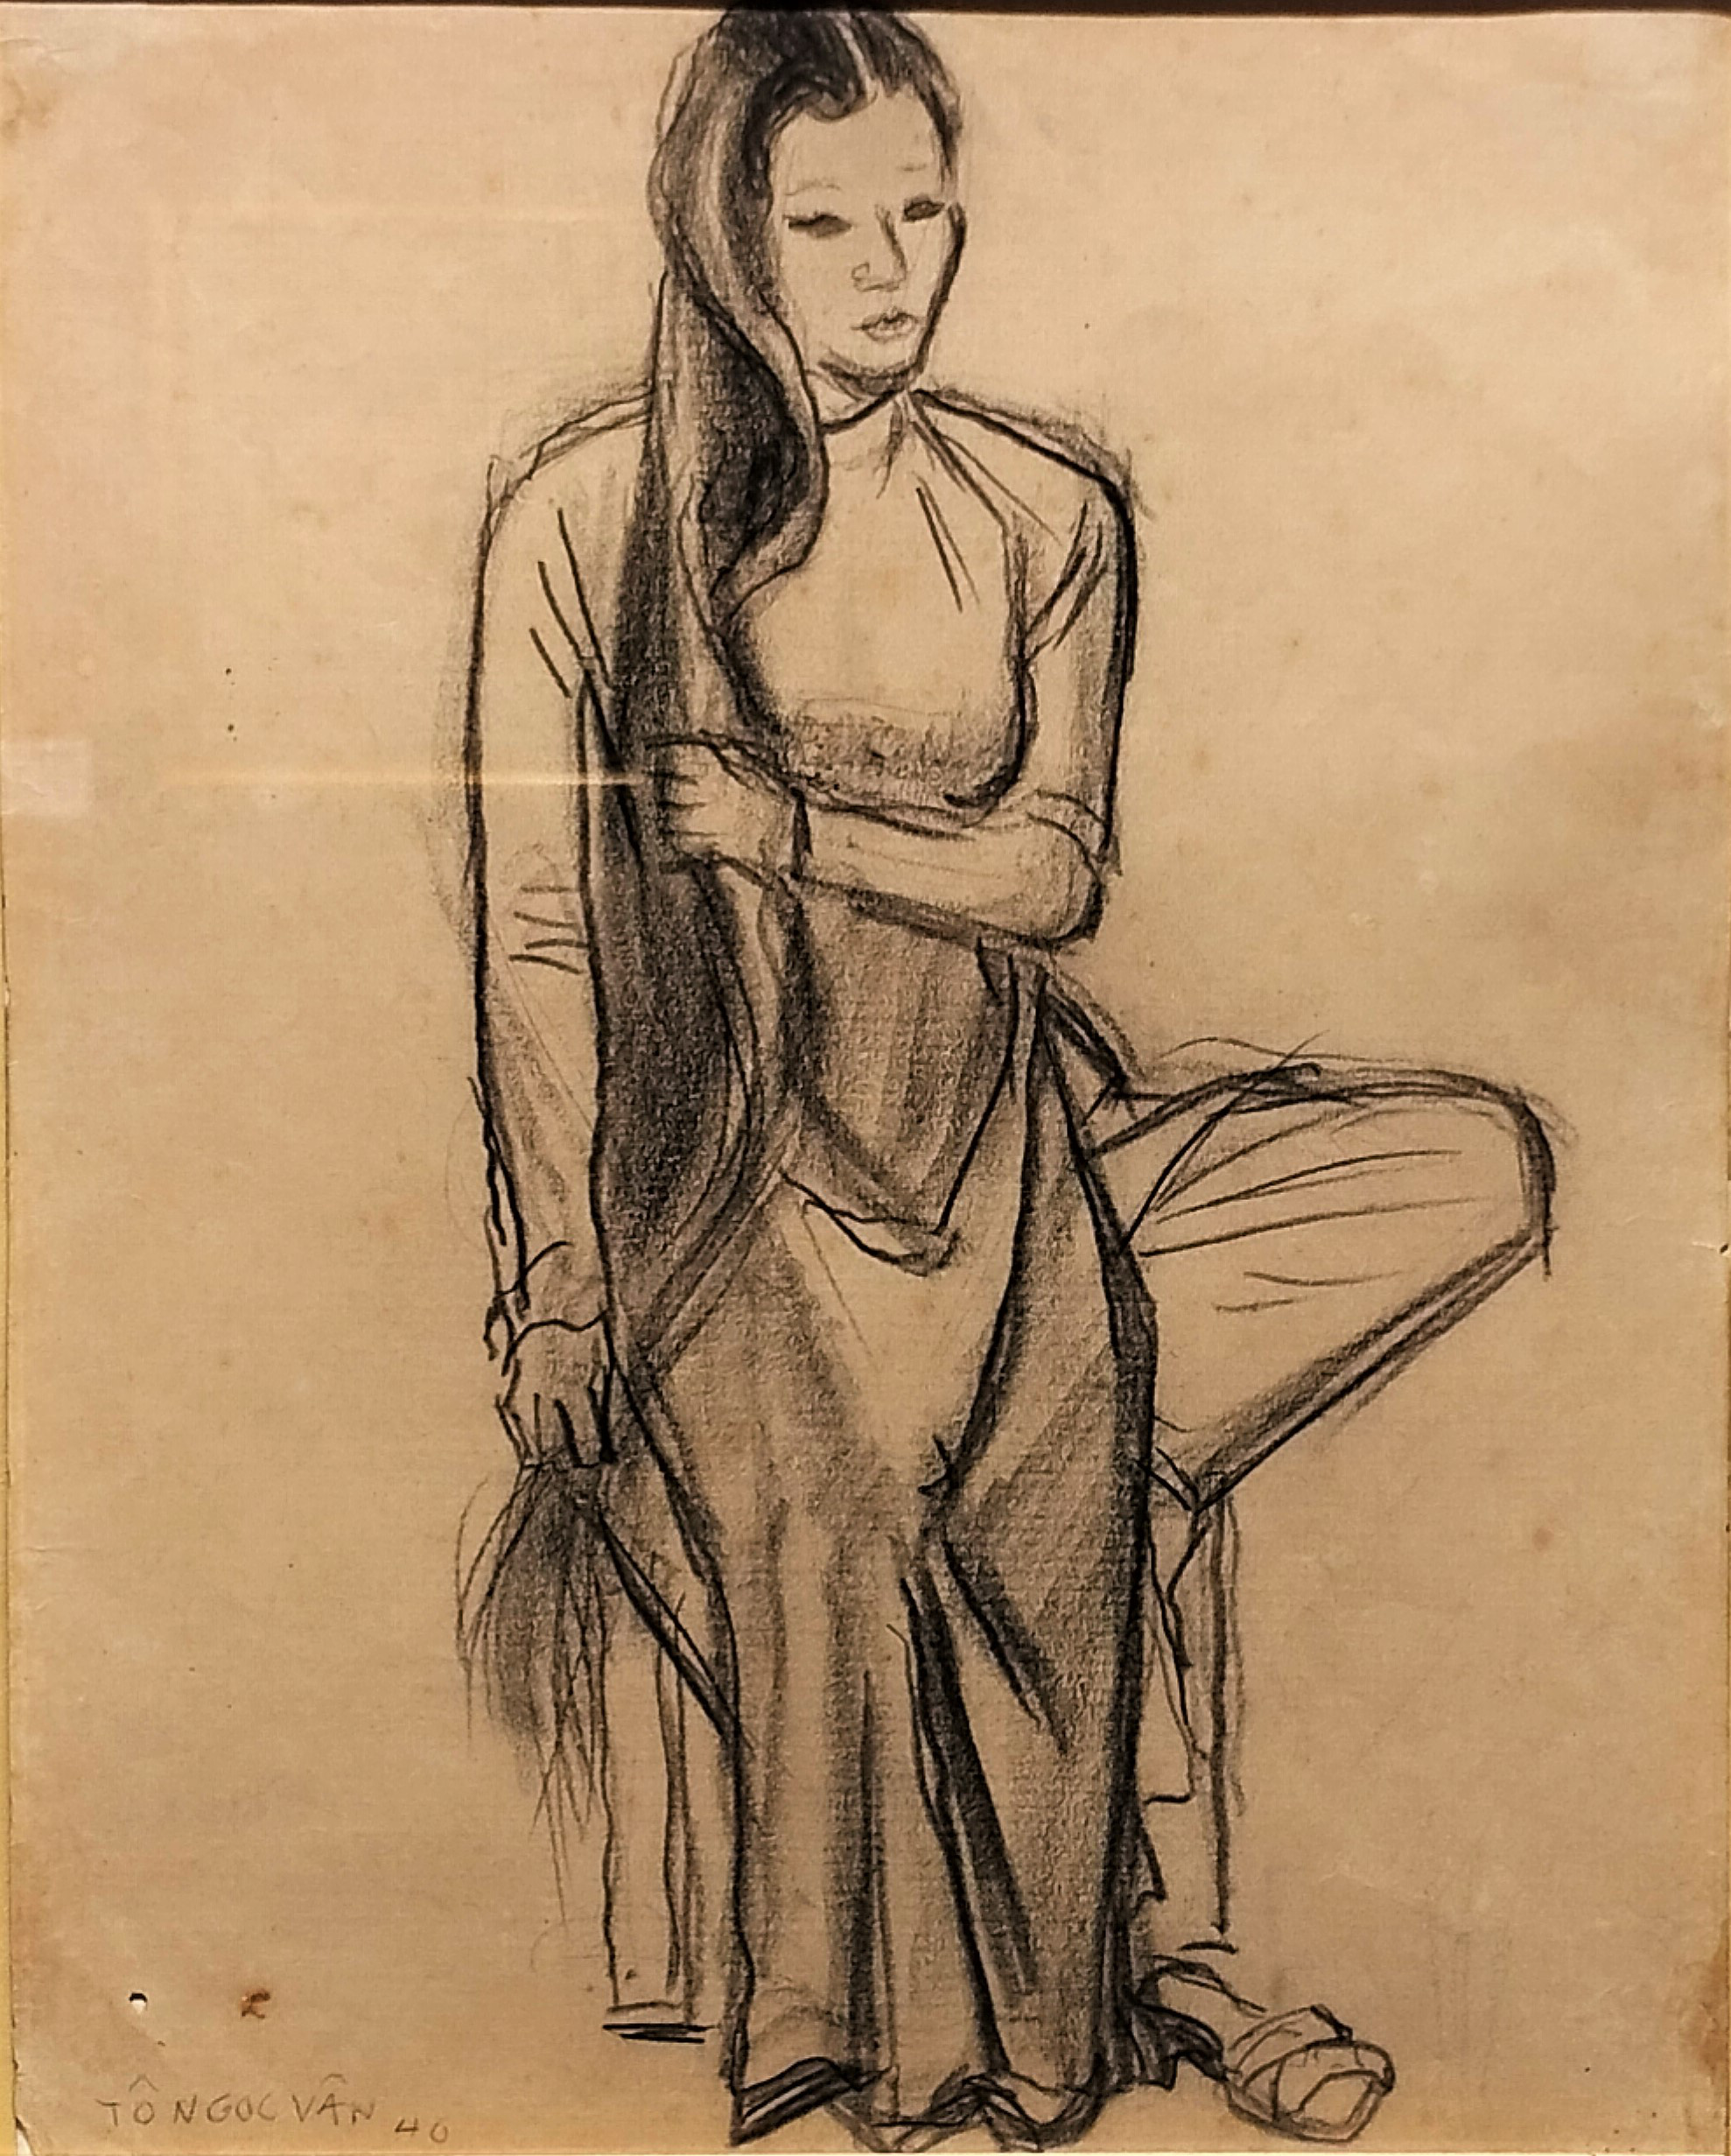 Tranh chân dung "Thiếu nữ xõa tóc" vẽ bằng chì than của danh họa Tô Ngọc Vân (1906 - 1954). Ông là họa sĩ xuất sắc trước 1945, được tôn vinh trong bộ tứ mỹ thuật Việt Nam đời đầu "nhất Trí, nhì Vân, tam Lân, tứ Cẩn", cũng là liệt sĩ đầu tiên của giới mỹ thuật.